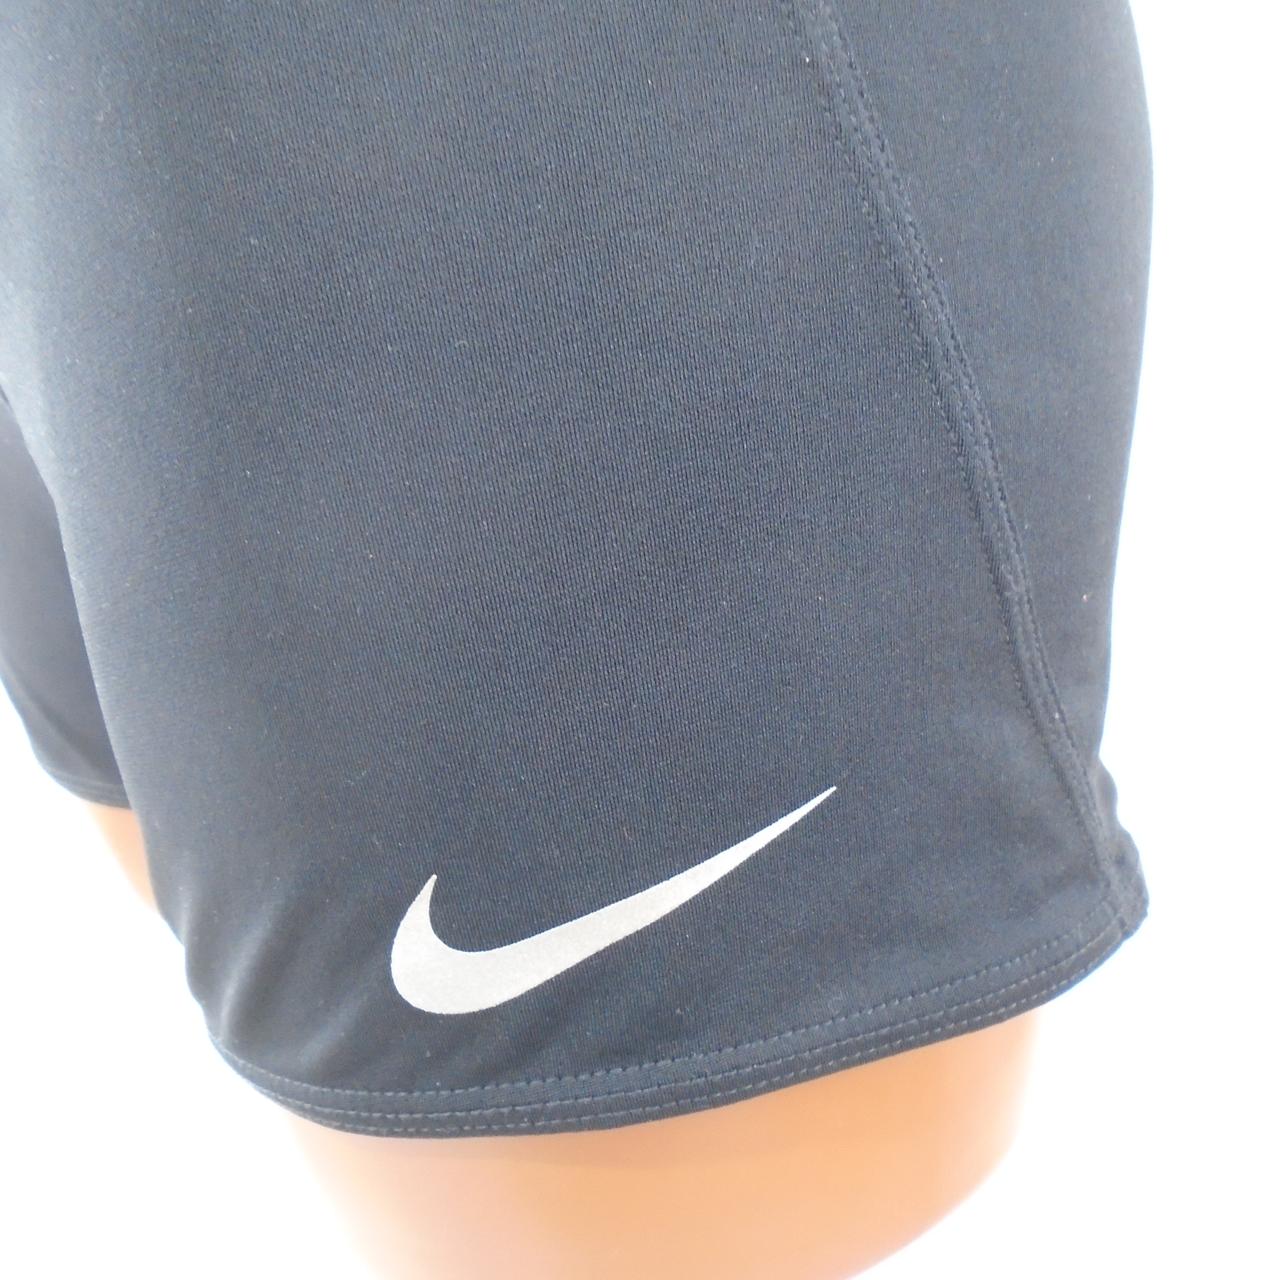 Women's Shorts Nike. Black. L. Used. Good